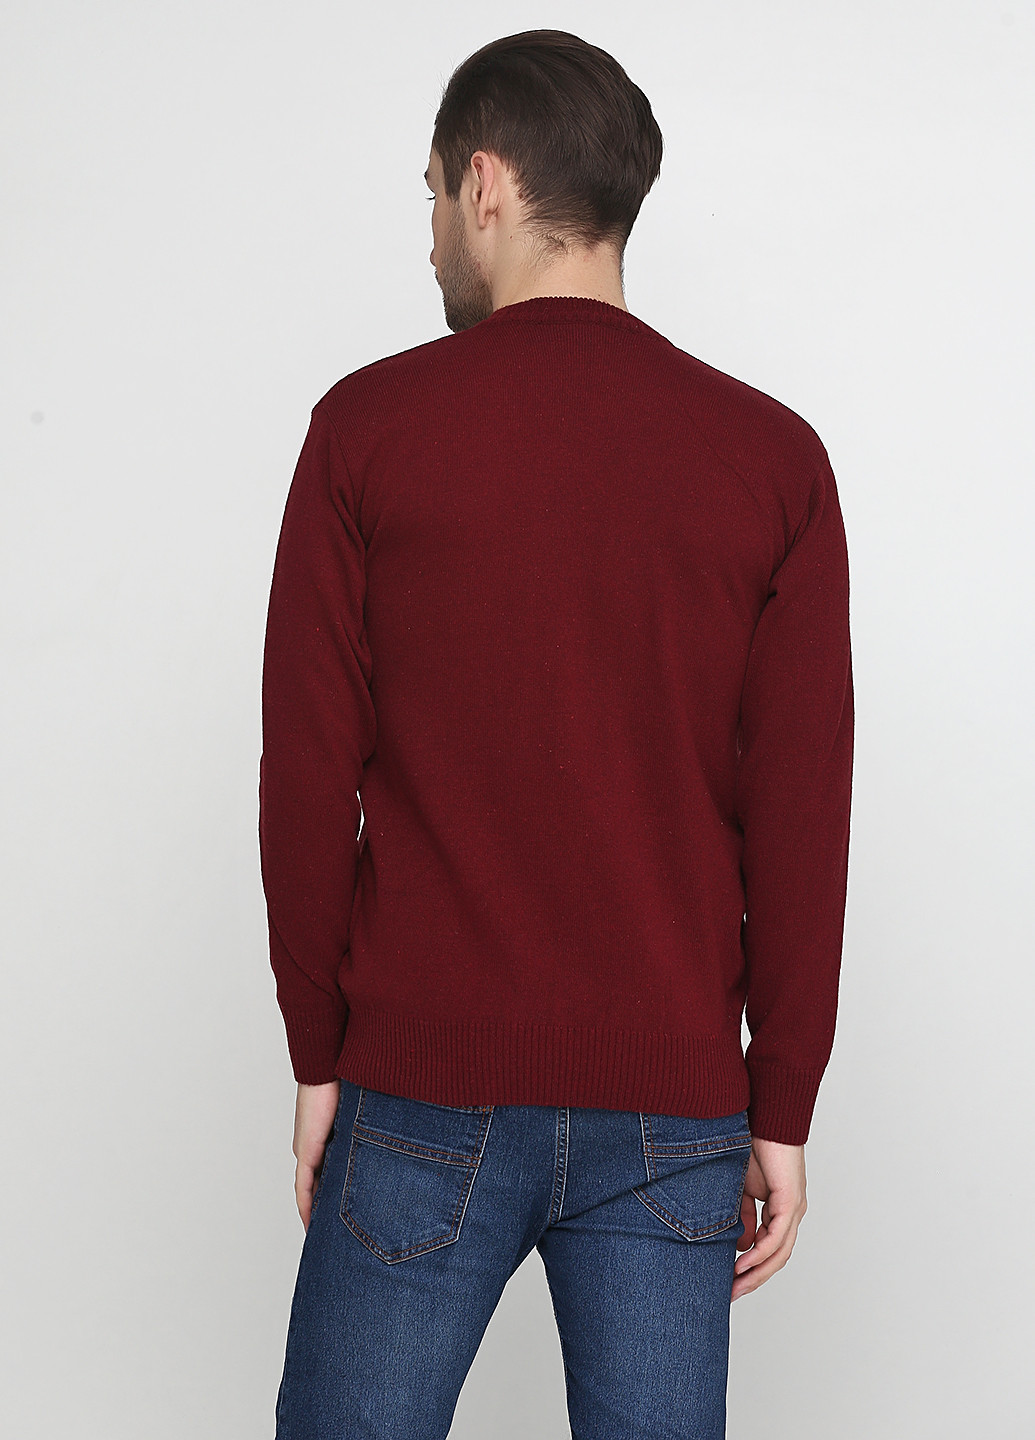 Бордовый демисезонный пуловер пуловер Enbiya